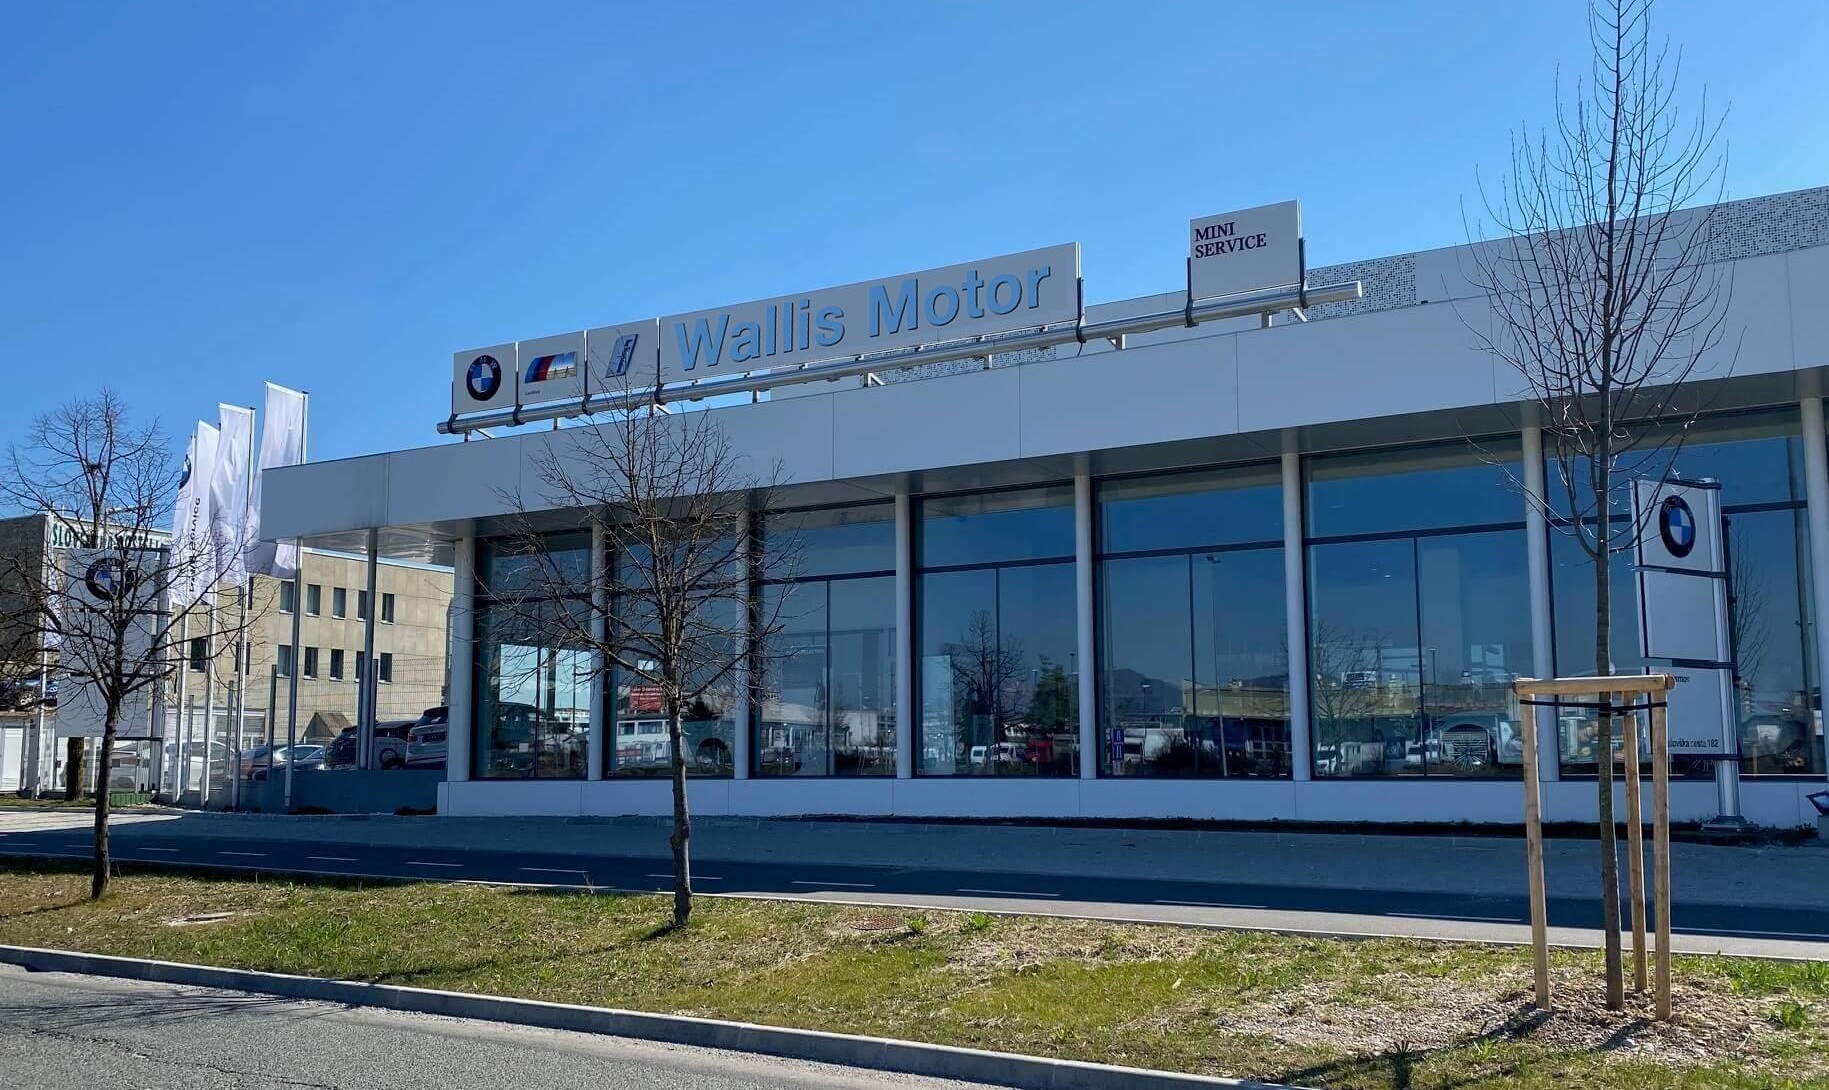 URADNO: BMW Wallis Motor bo v Ljubljani že septembra nadomestil BMW A-Cosmos!